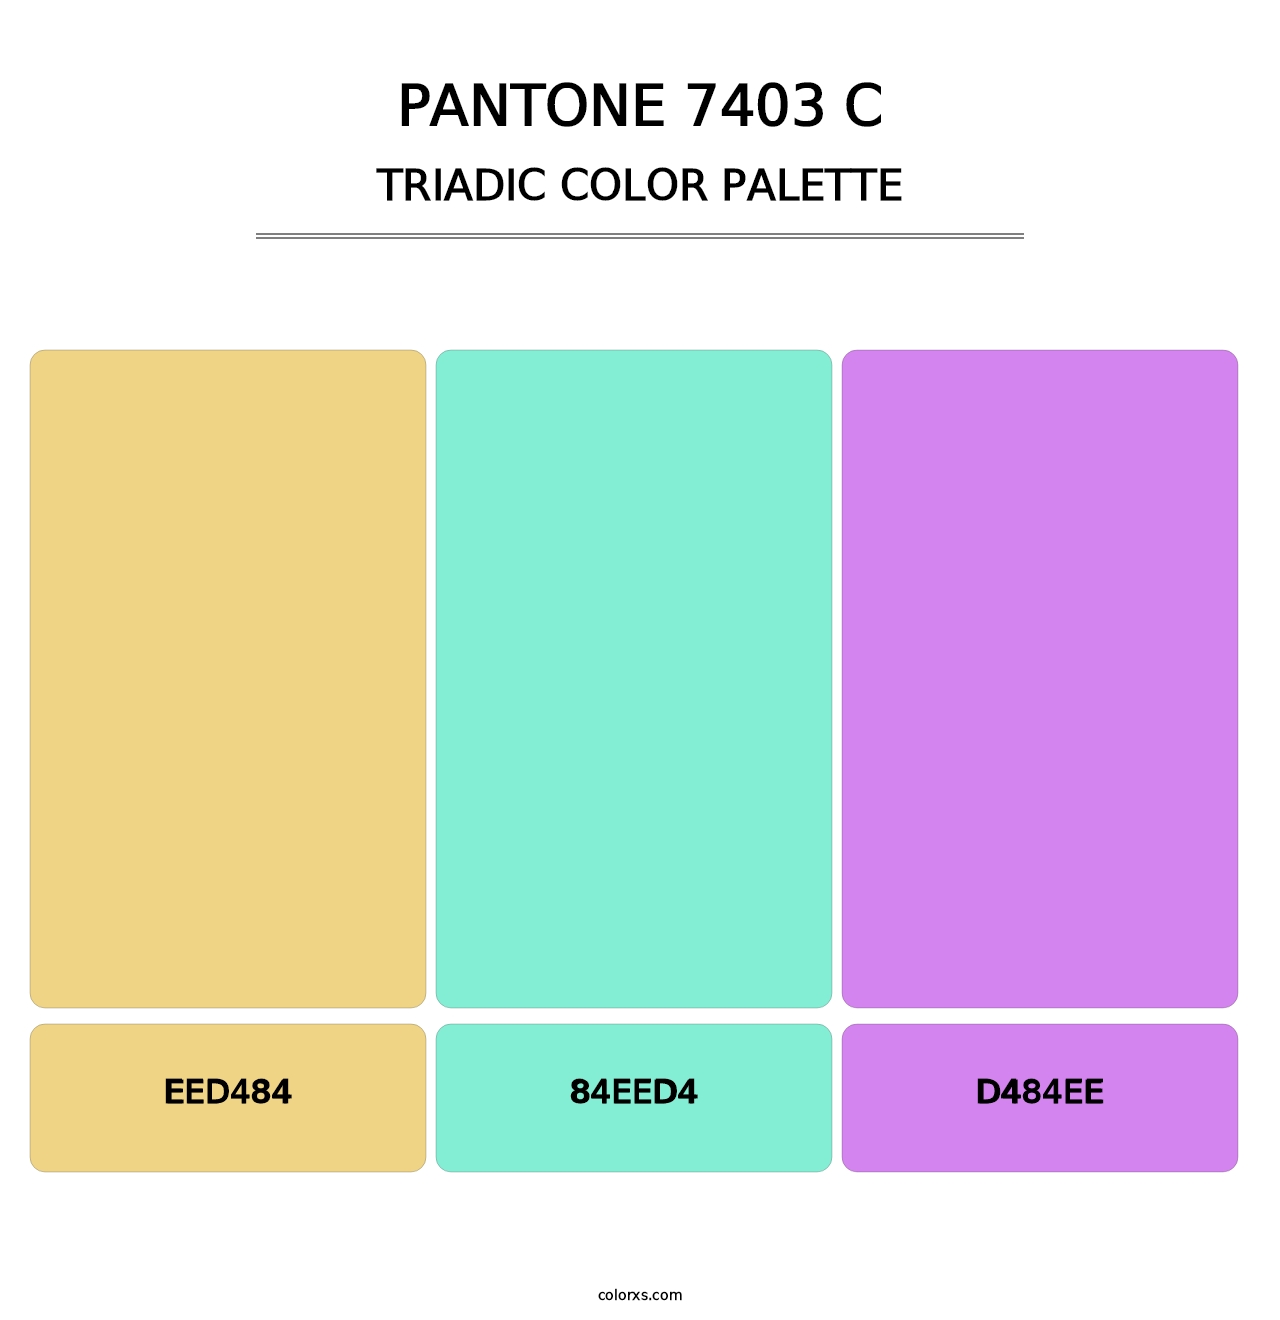 PANTONE 7403 C - Triadic Color Palette